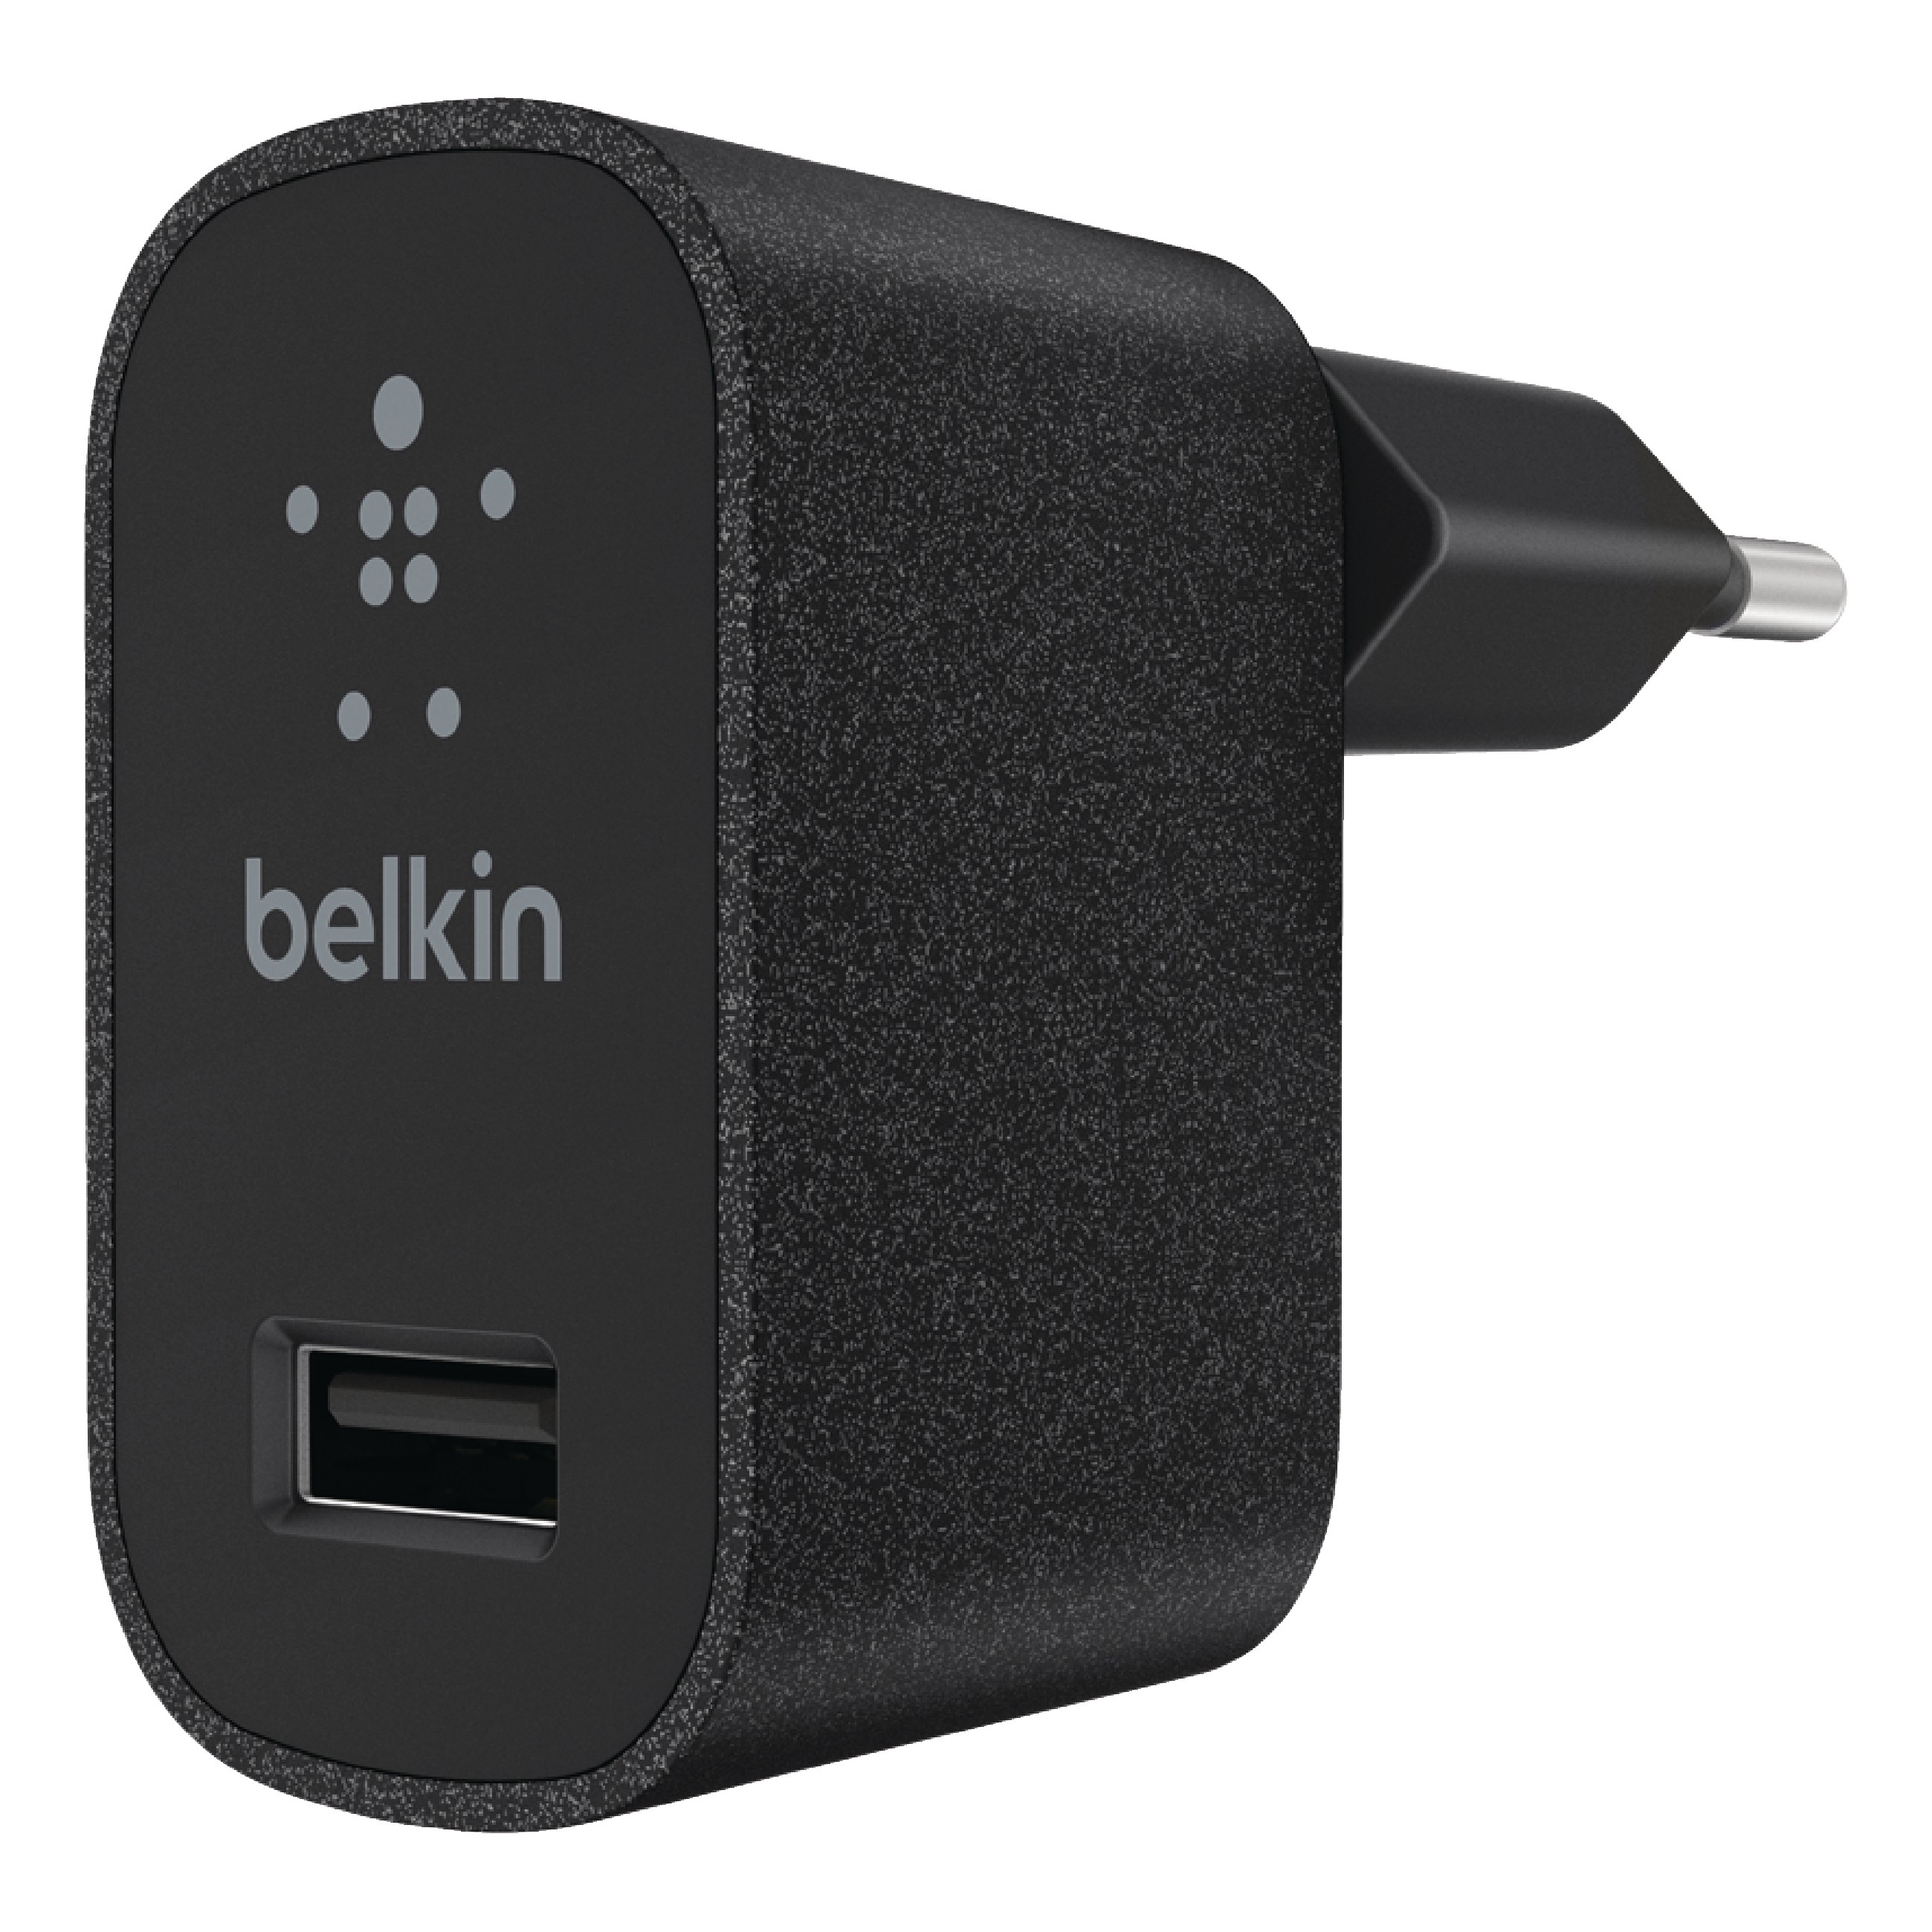 Behandeling reactie gewoon Belkin Lader 1 - Uitgang 2.4 A USB Zwart - AdapterDirect.nl